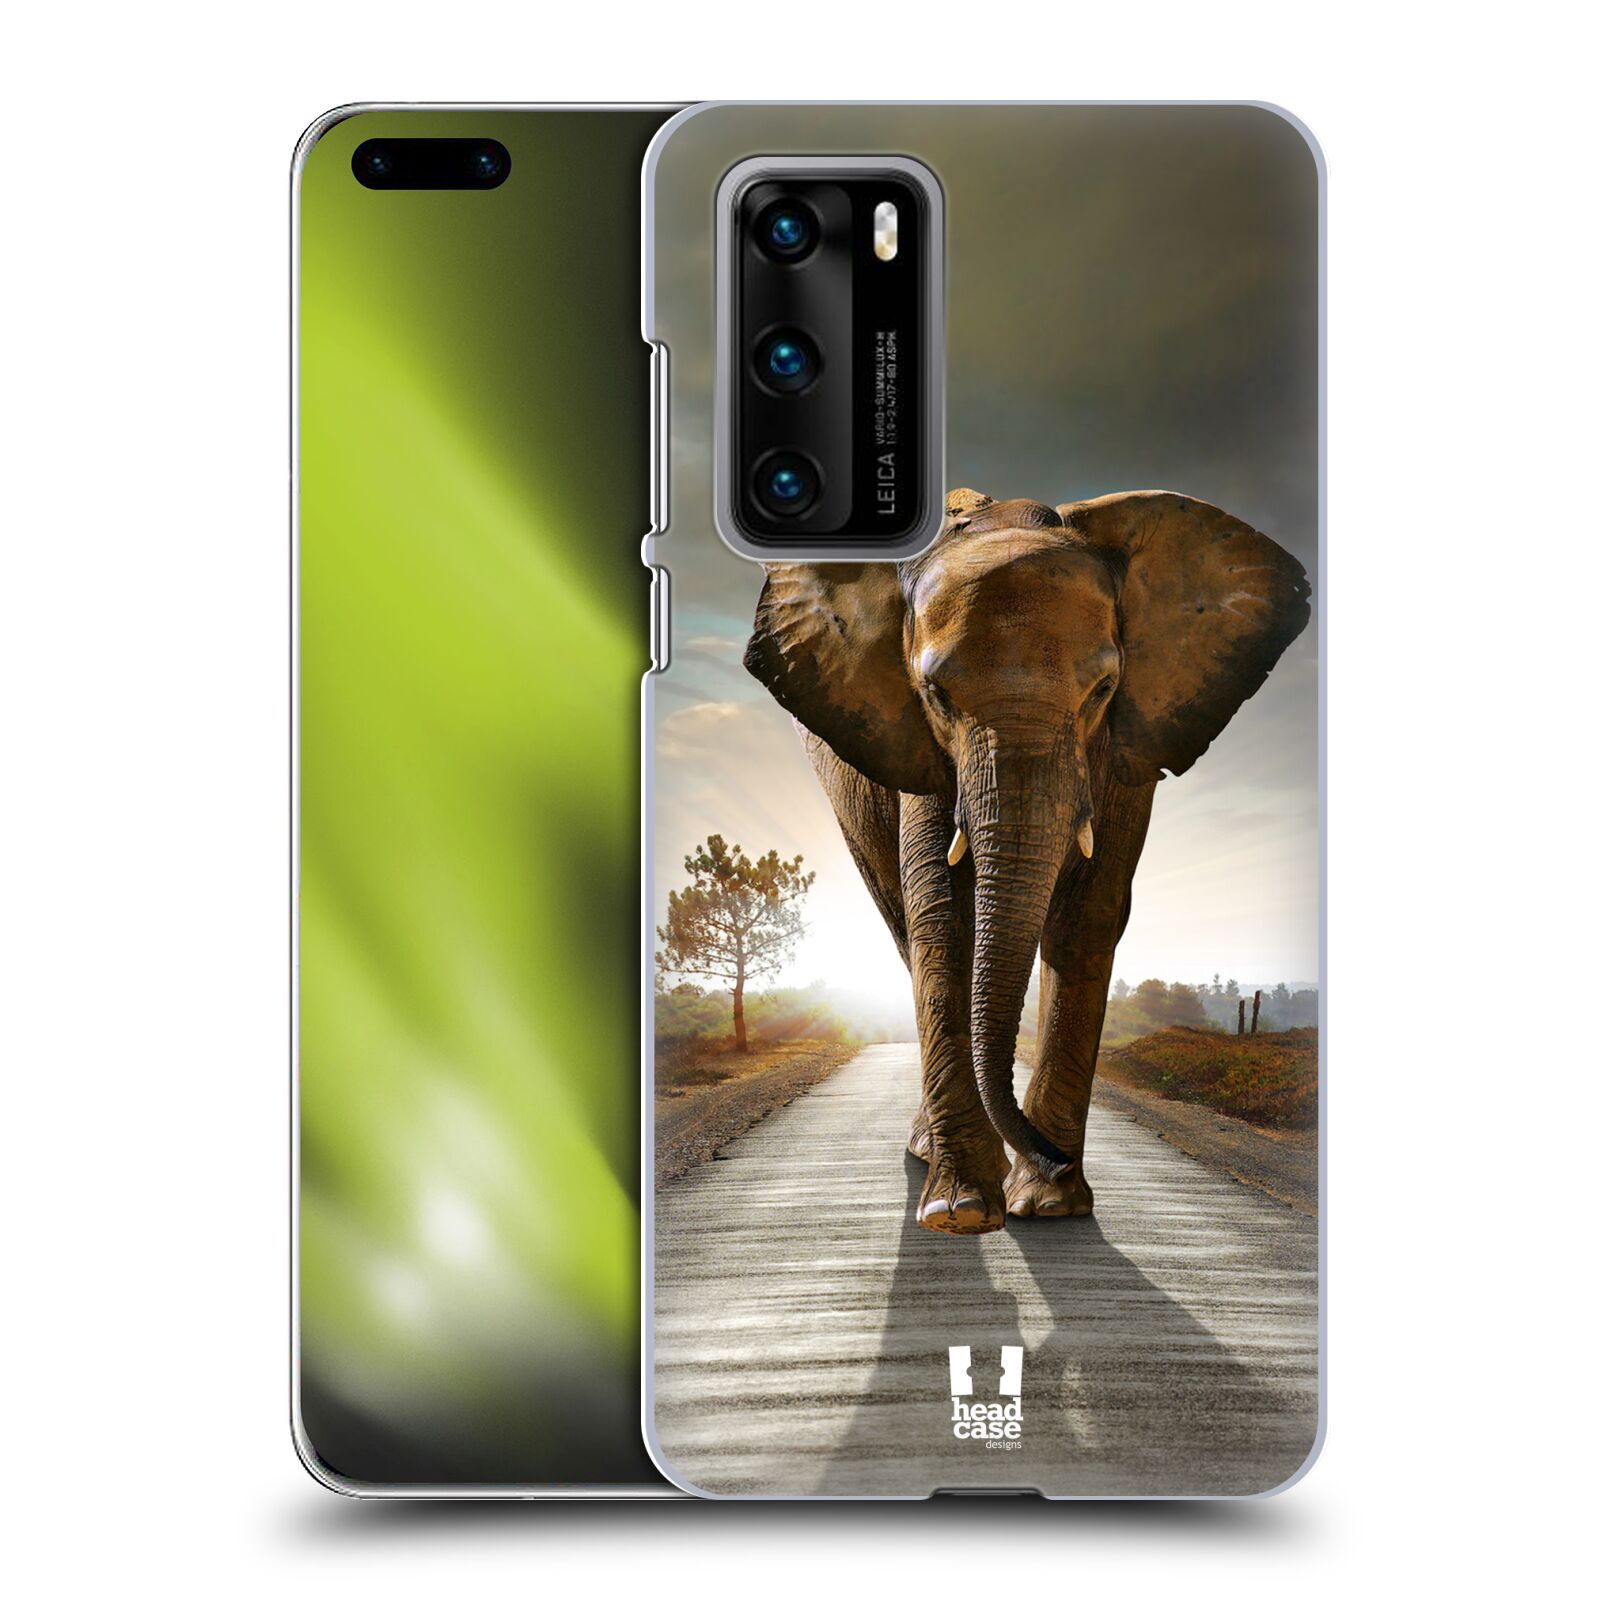 Zadní obal pro mobil Huawei P40 - HEAD CASE - Svět zvířat kráčející slon